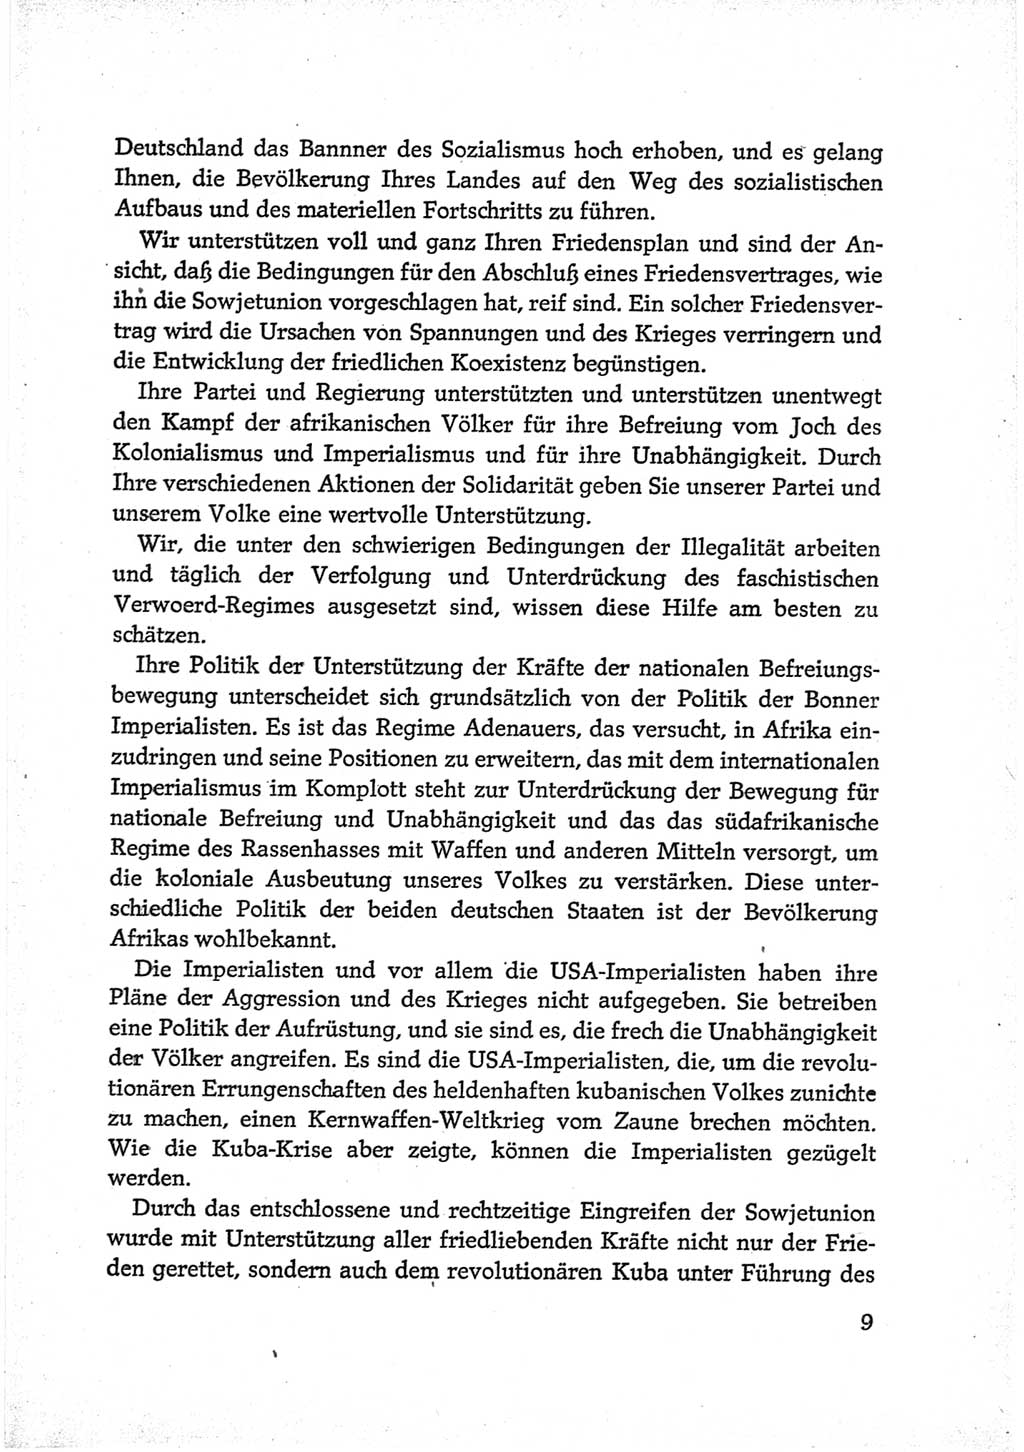 Protokoll der Verhandlungen des Ⅵ. Parteitages der Sozialistischen Einheitspartei Deutschlands (SED) [Deutsche Demokratische Republik (DDR)] 1963, Band Ⅲ, Seite 9 (Prot. Verh. Ⅵ. PT SED DDR 1963, Bd. Ⅲ, S. 9)